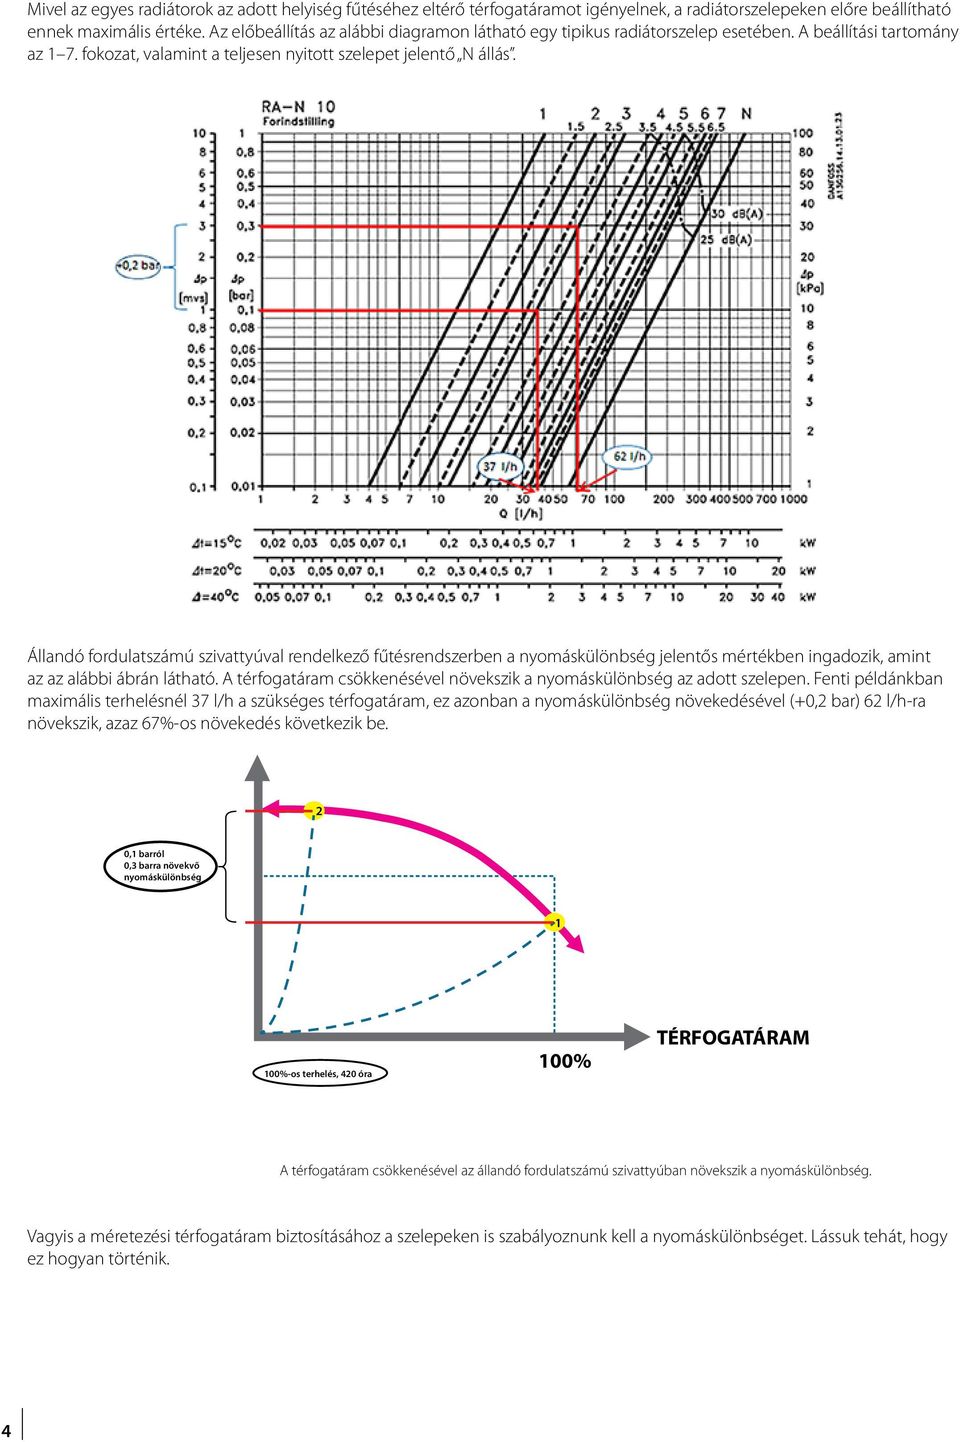 Állandó fordulatszámú szivattyúval rendelkező fűtésrendszerben a nyomáskülönbség jelentős mértékben ingadozik, amint az az alábbi ábrán látható.